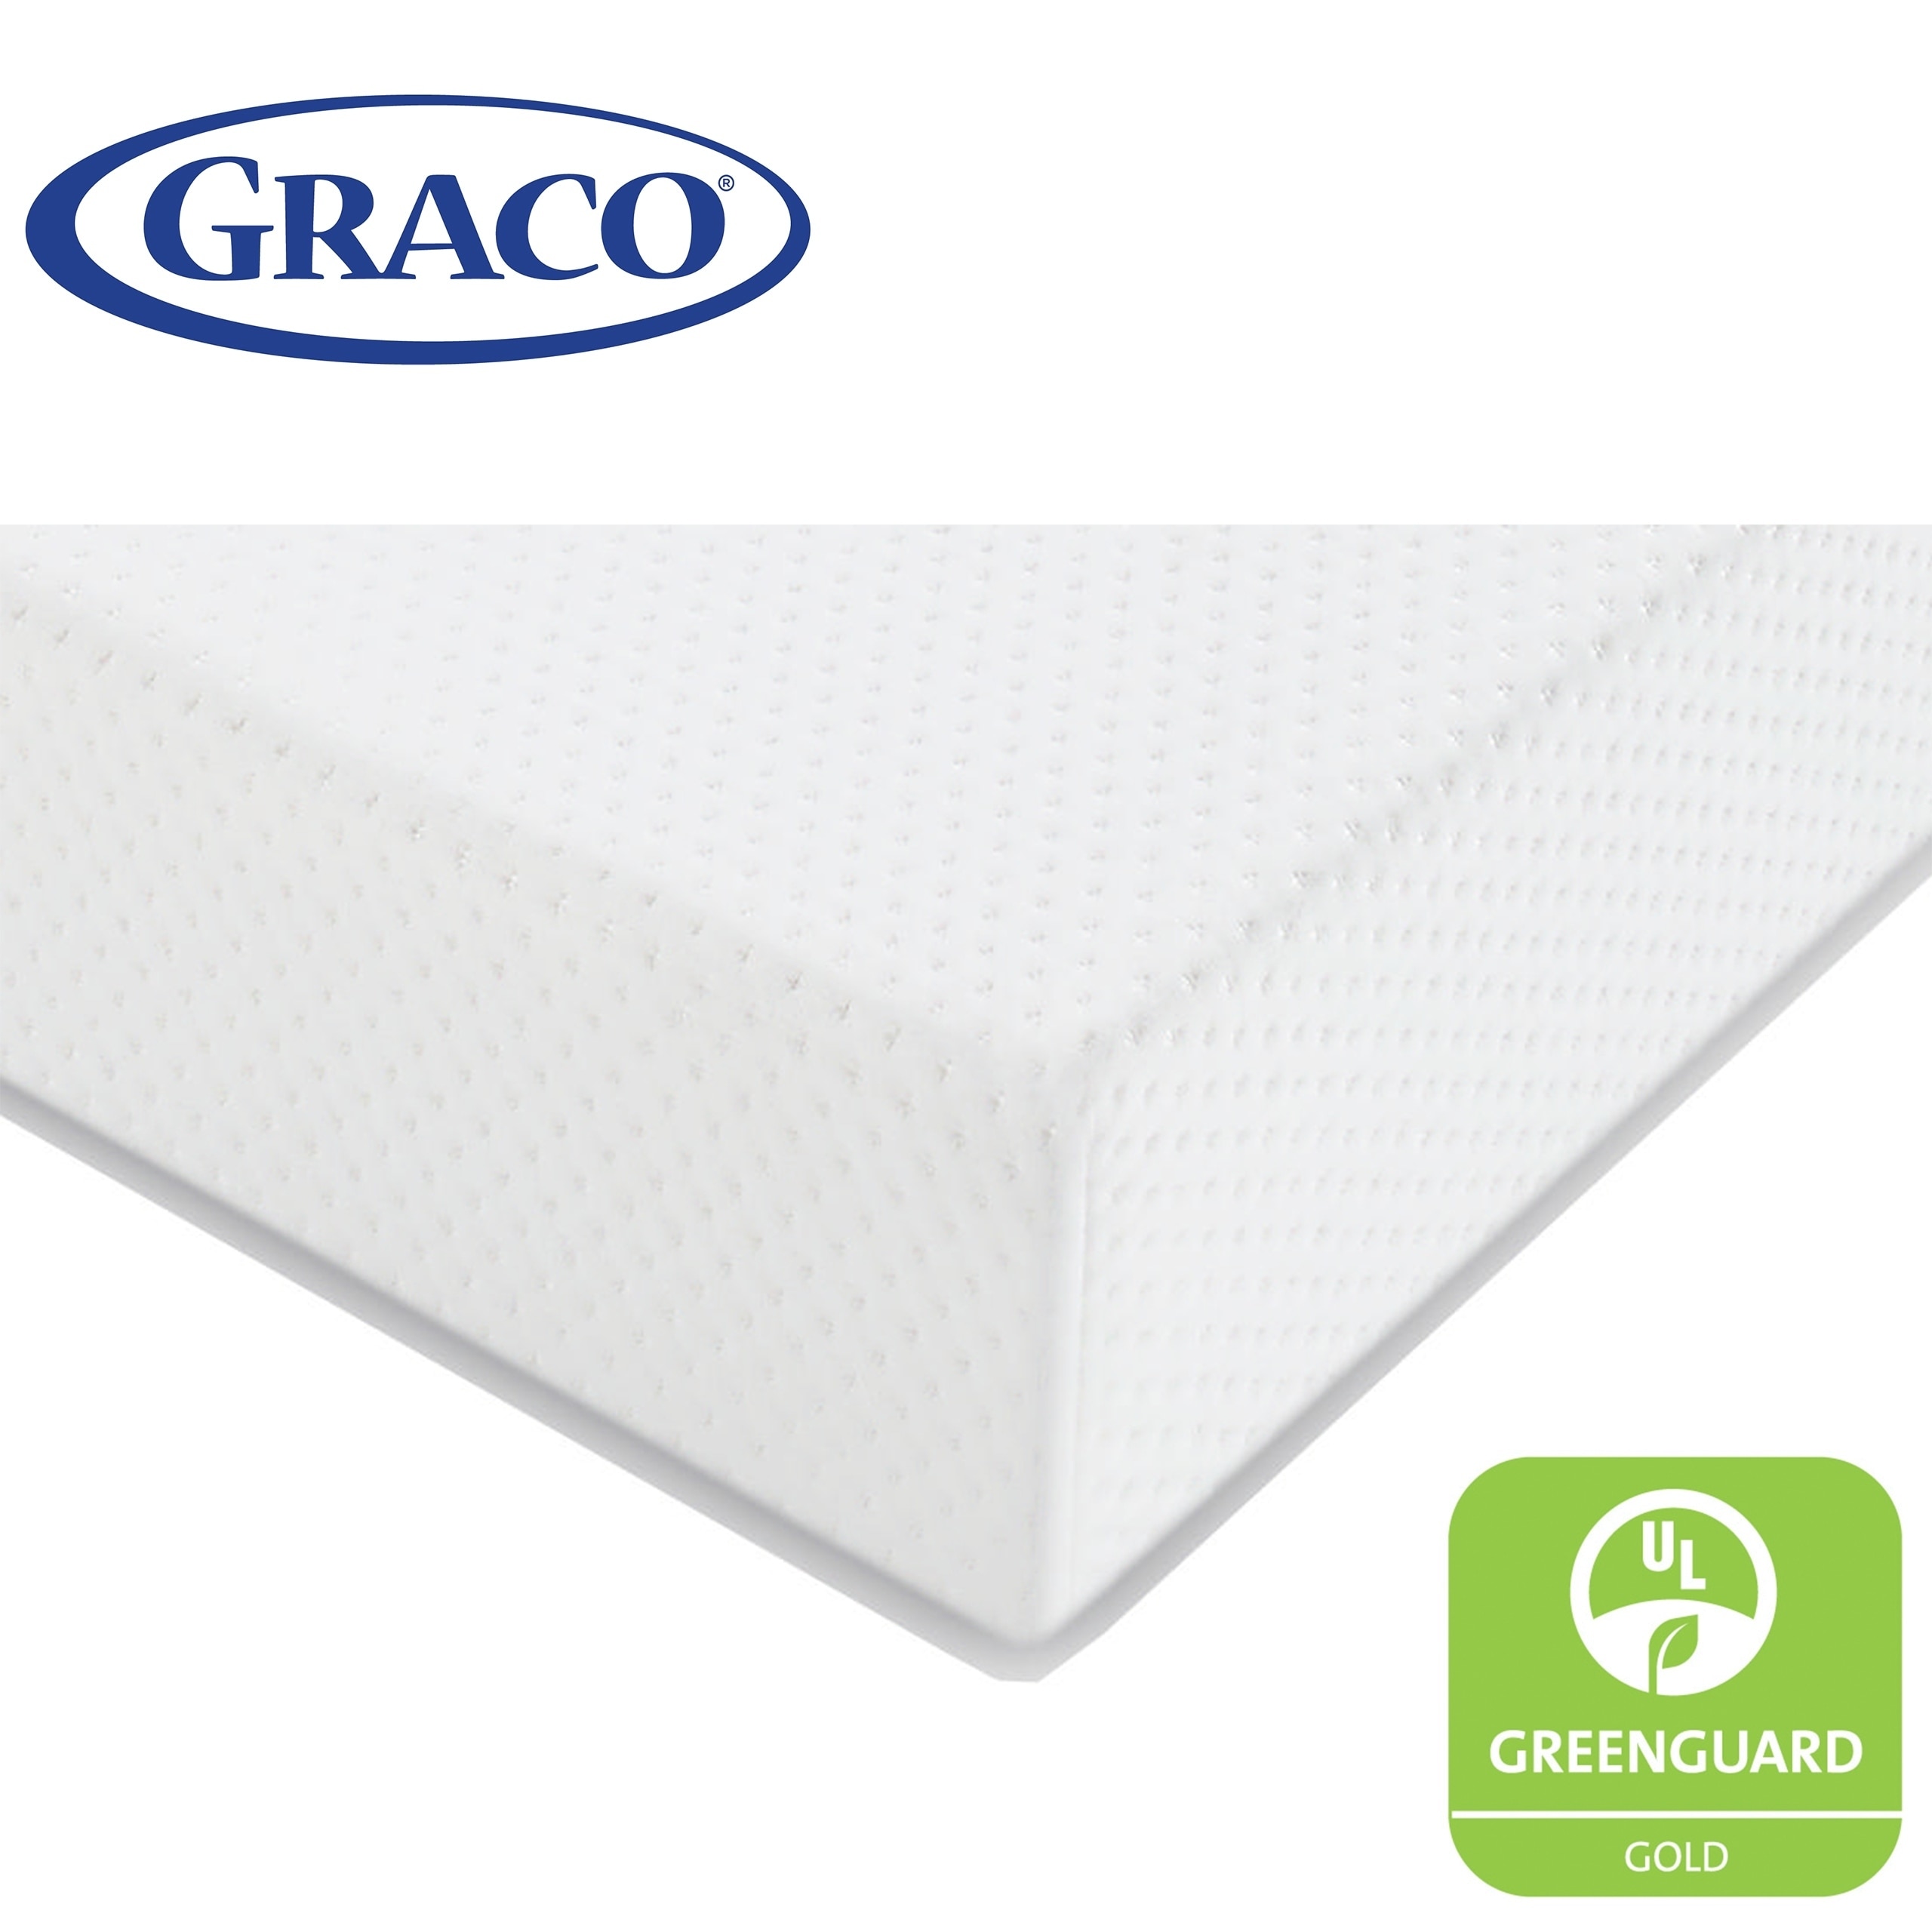 graco toddler mattress